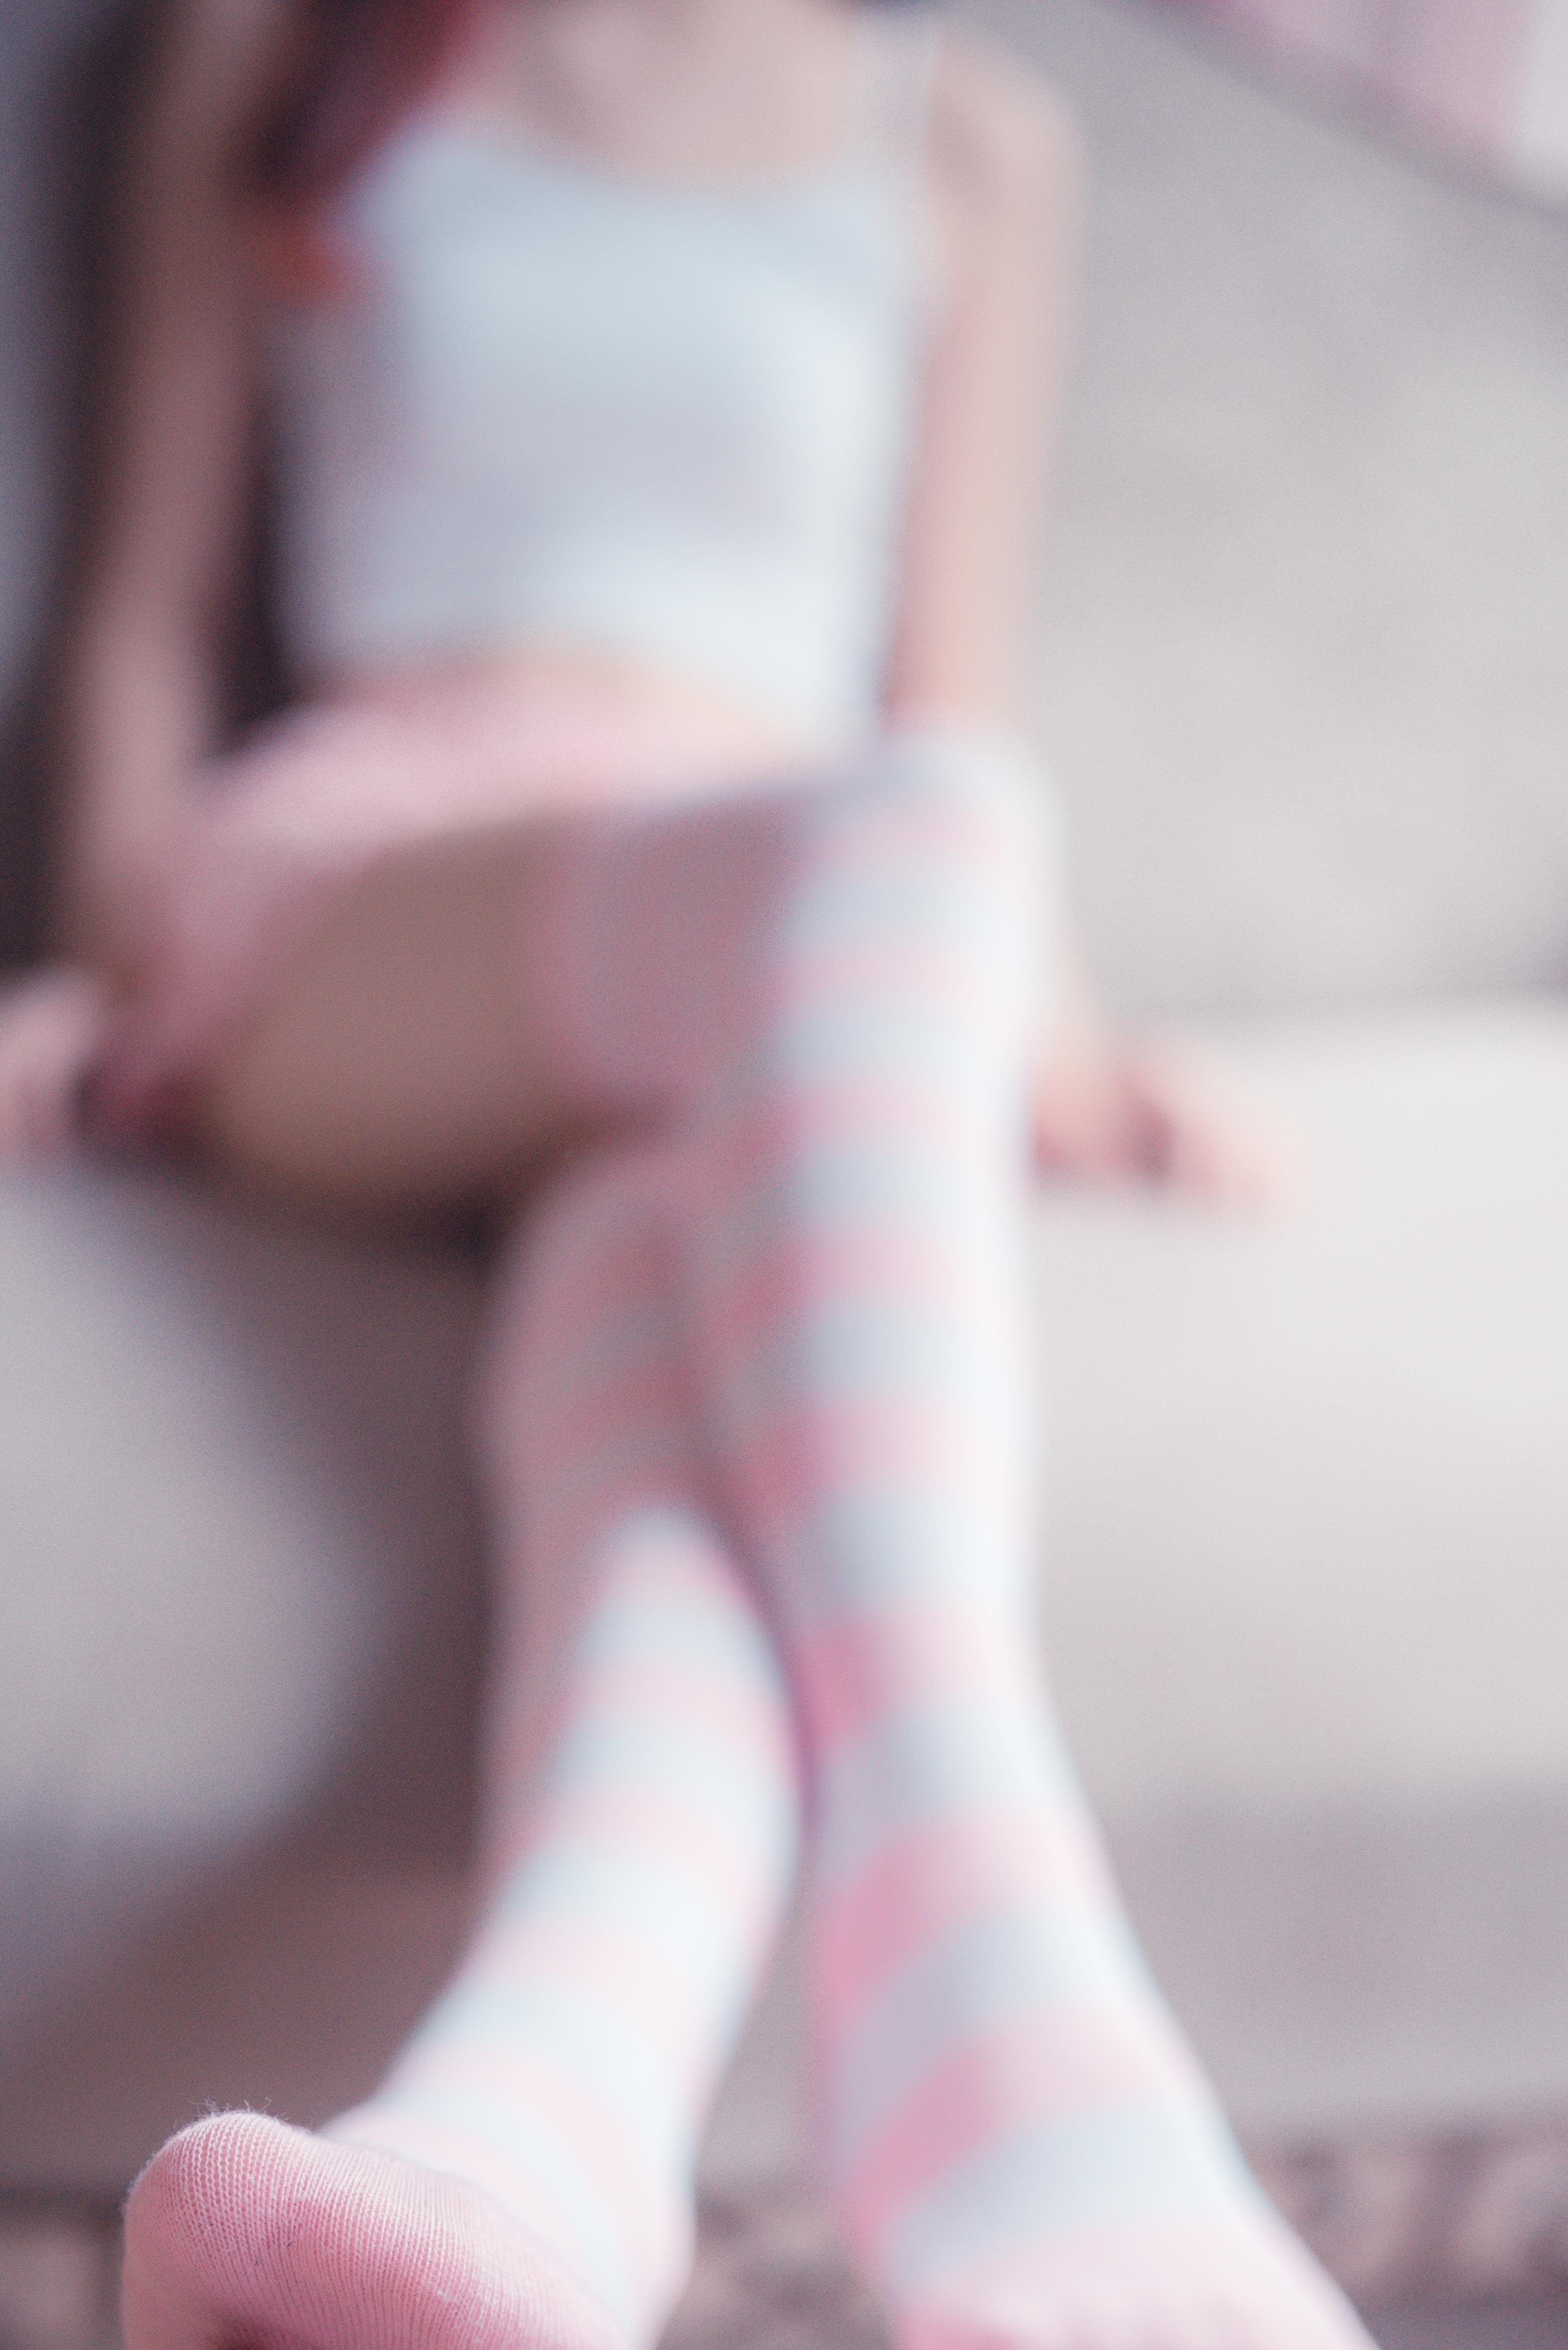 [风之领域]NO.025 性感小萝莉白色小背心与粉色短裤加丝袜美腿私房写真集,